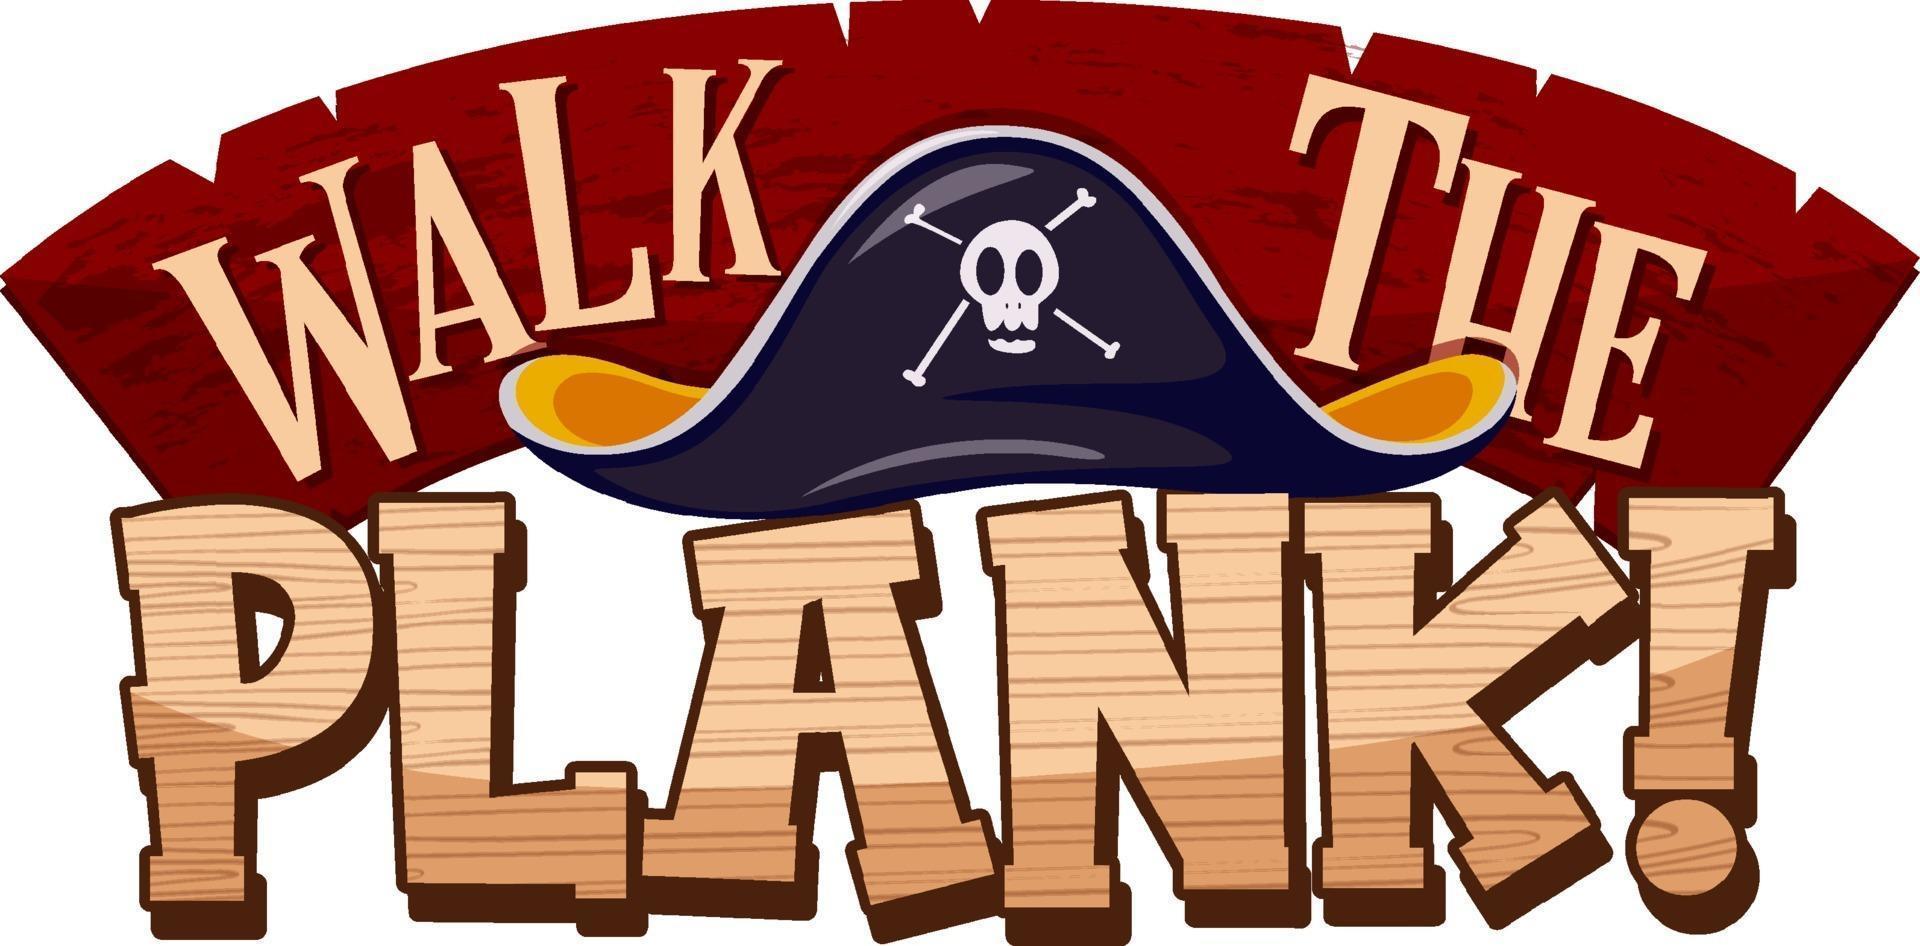 piratenconcept met loop de plank lettertype banner op witte achtergrond vector